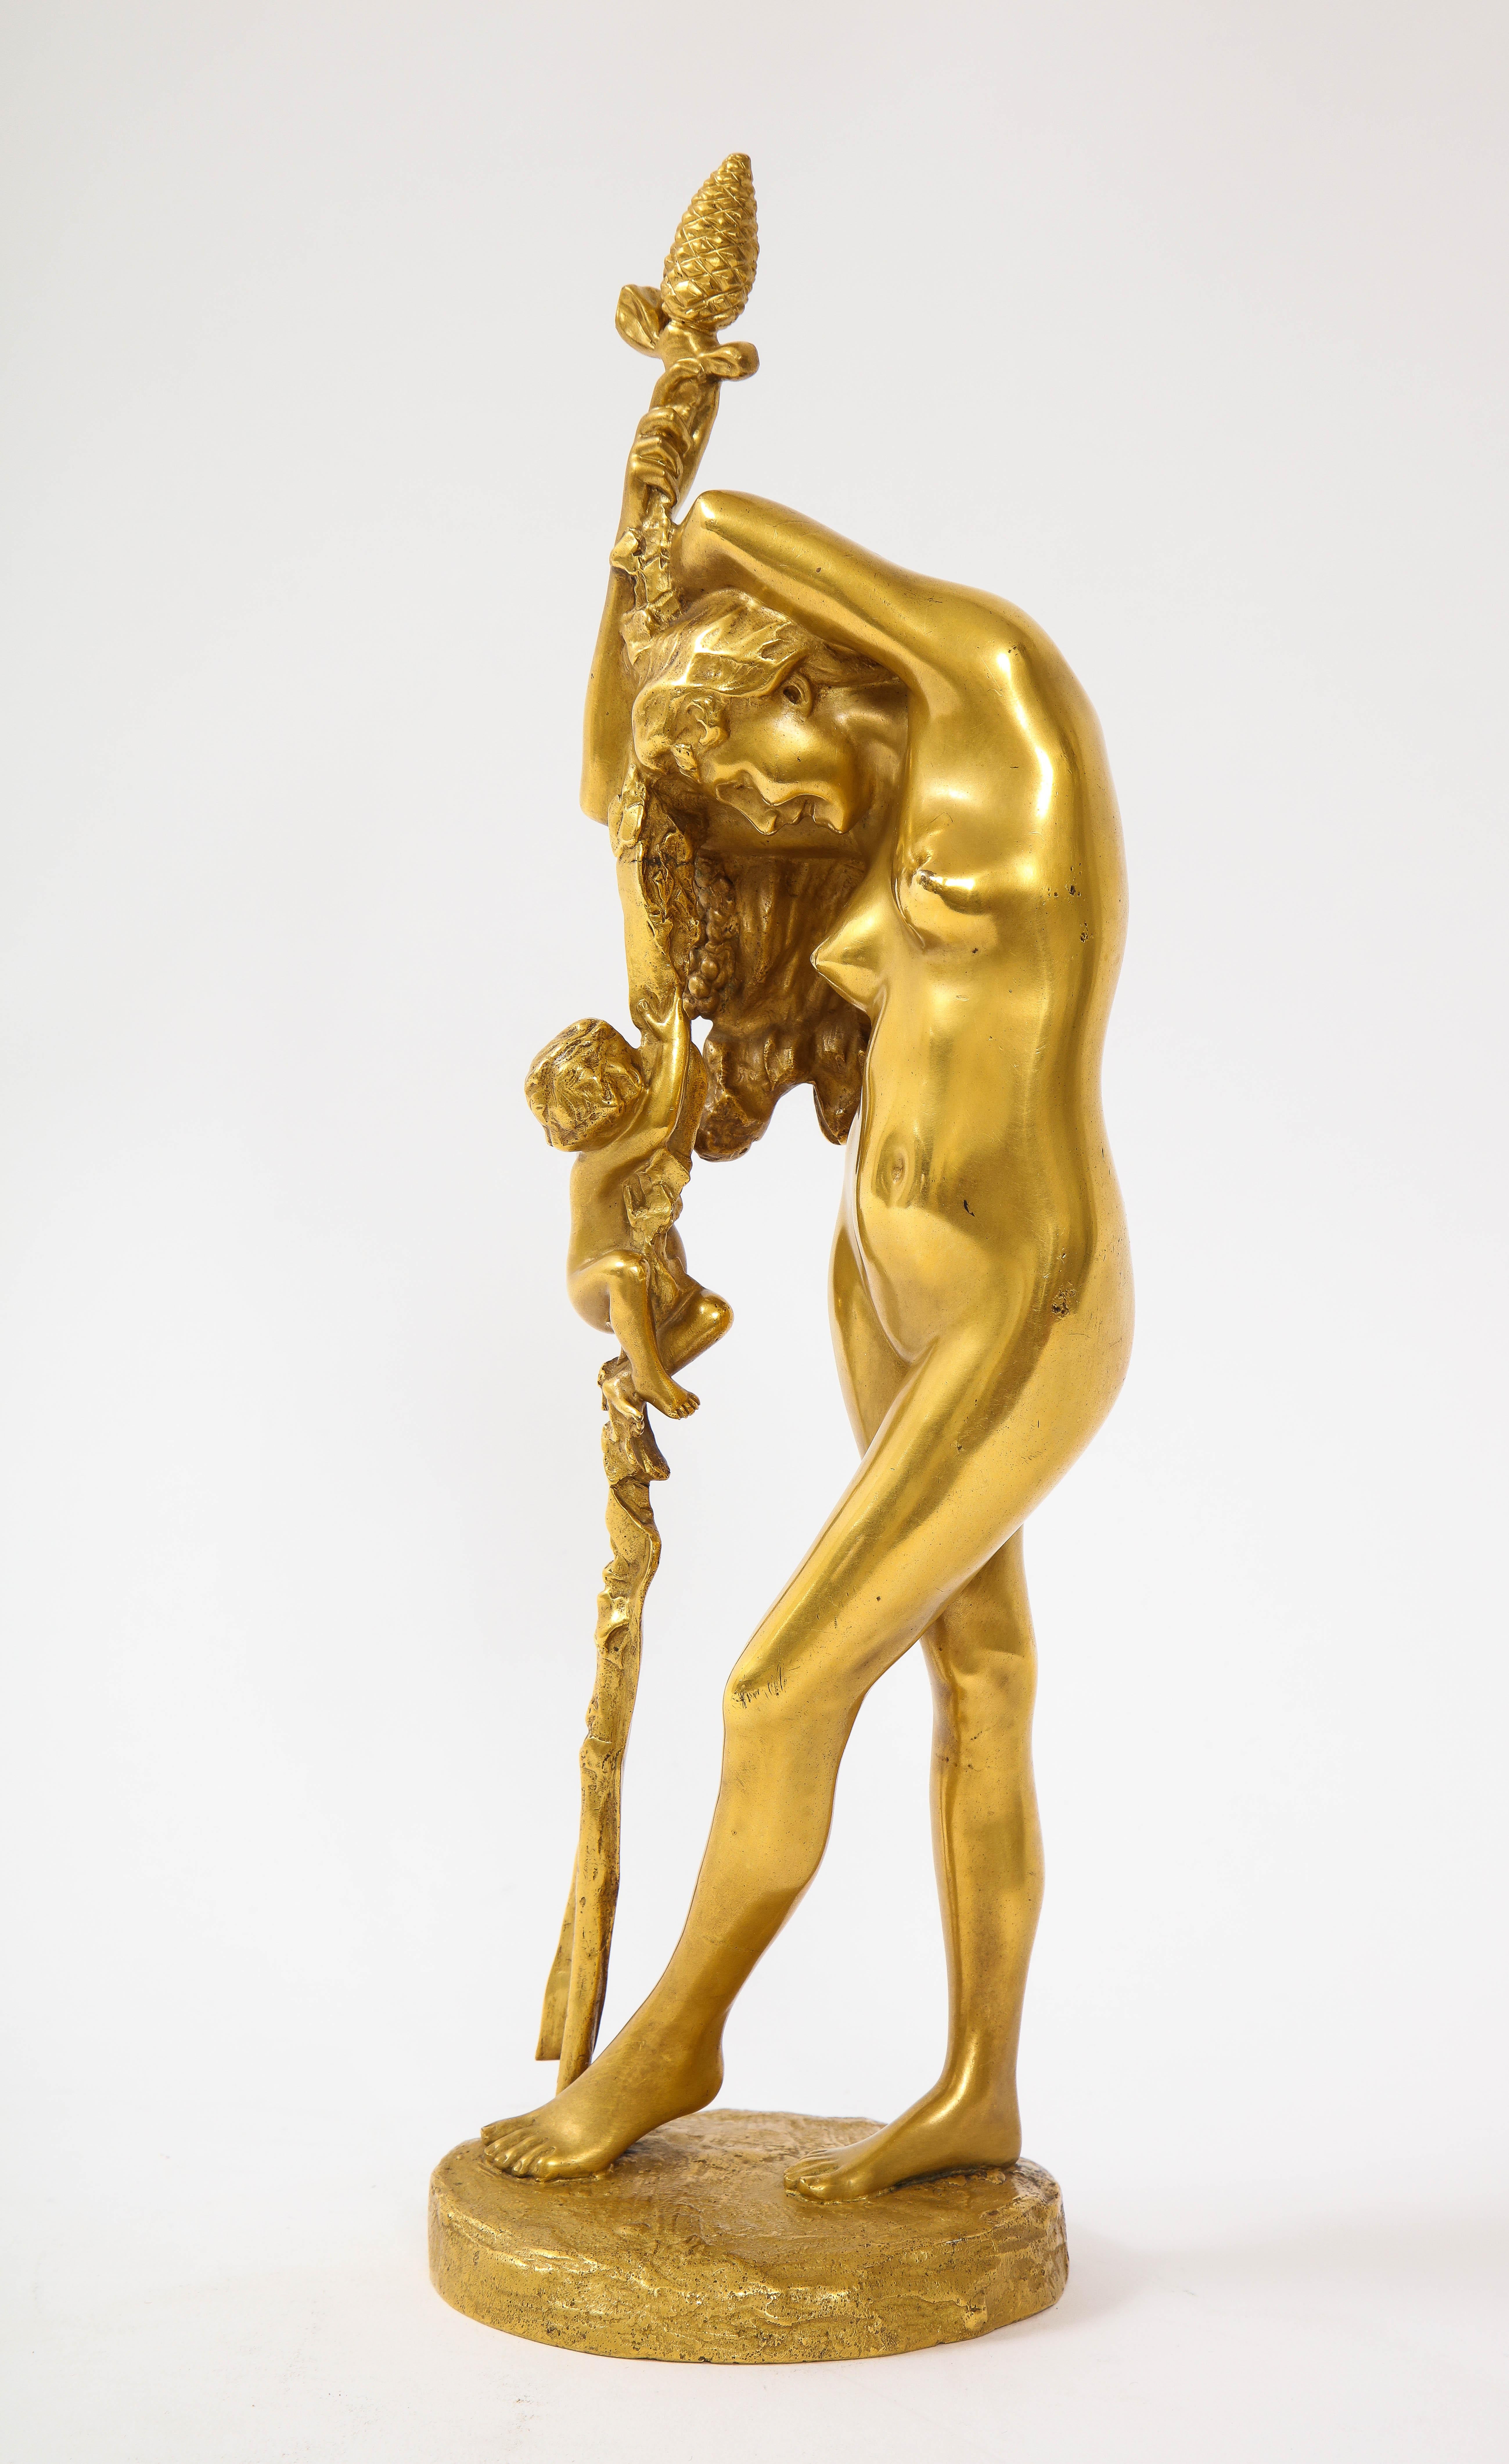 Eine prächtige französische Ormolu-Skulptur einer Baccante aus dem 19. Jahrhundert von Jean-Léon Gérôme. Diese unglaubliche Skulptur stammt von Jean-Léon Gérôme (französisch, 1824-1904), einem der berühmtesten und inspirierendsten akademischen